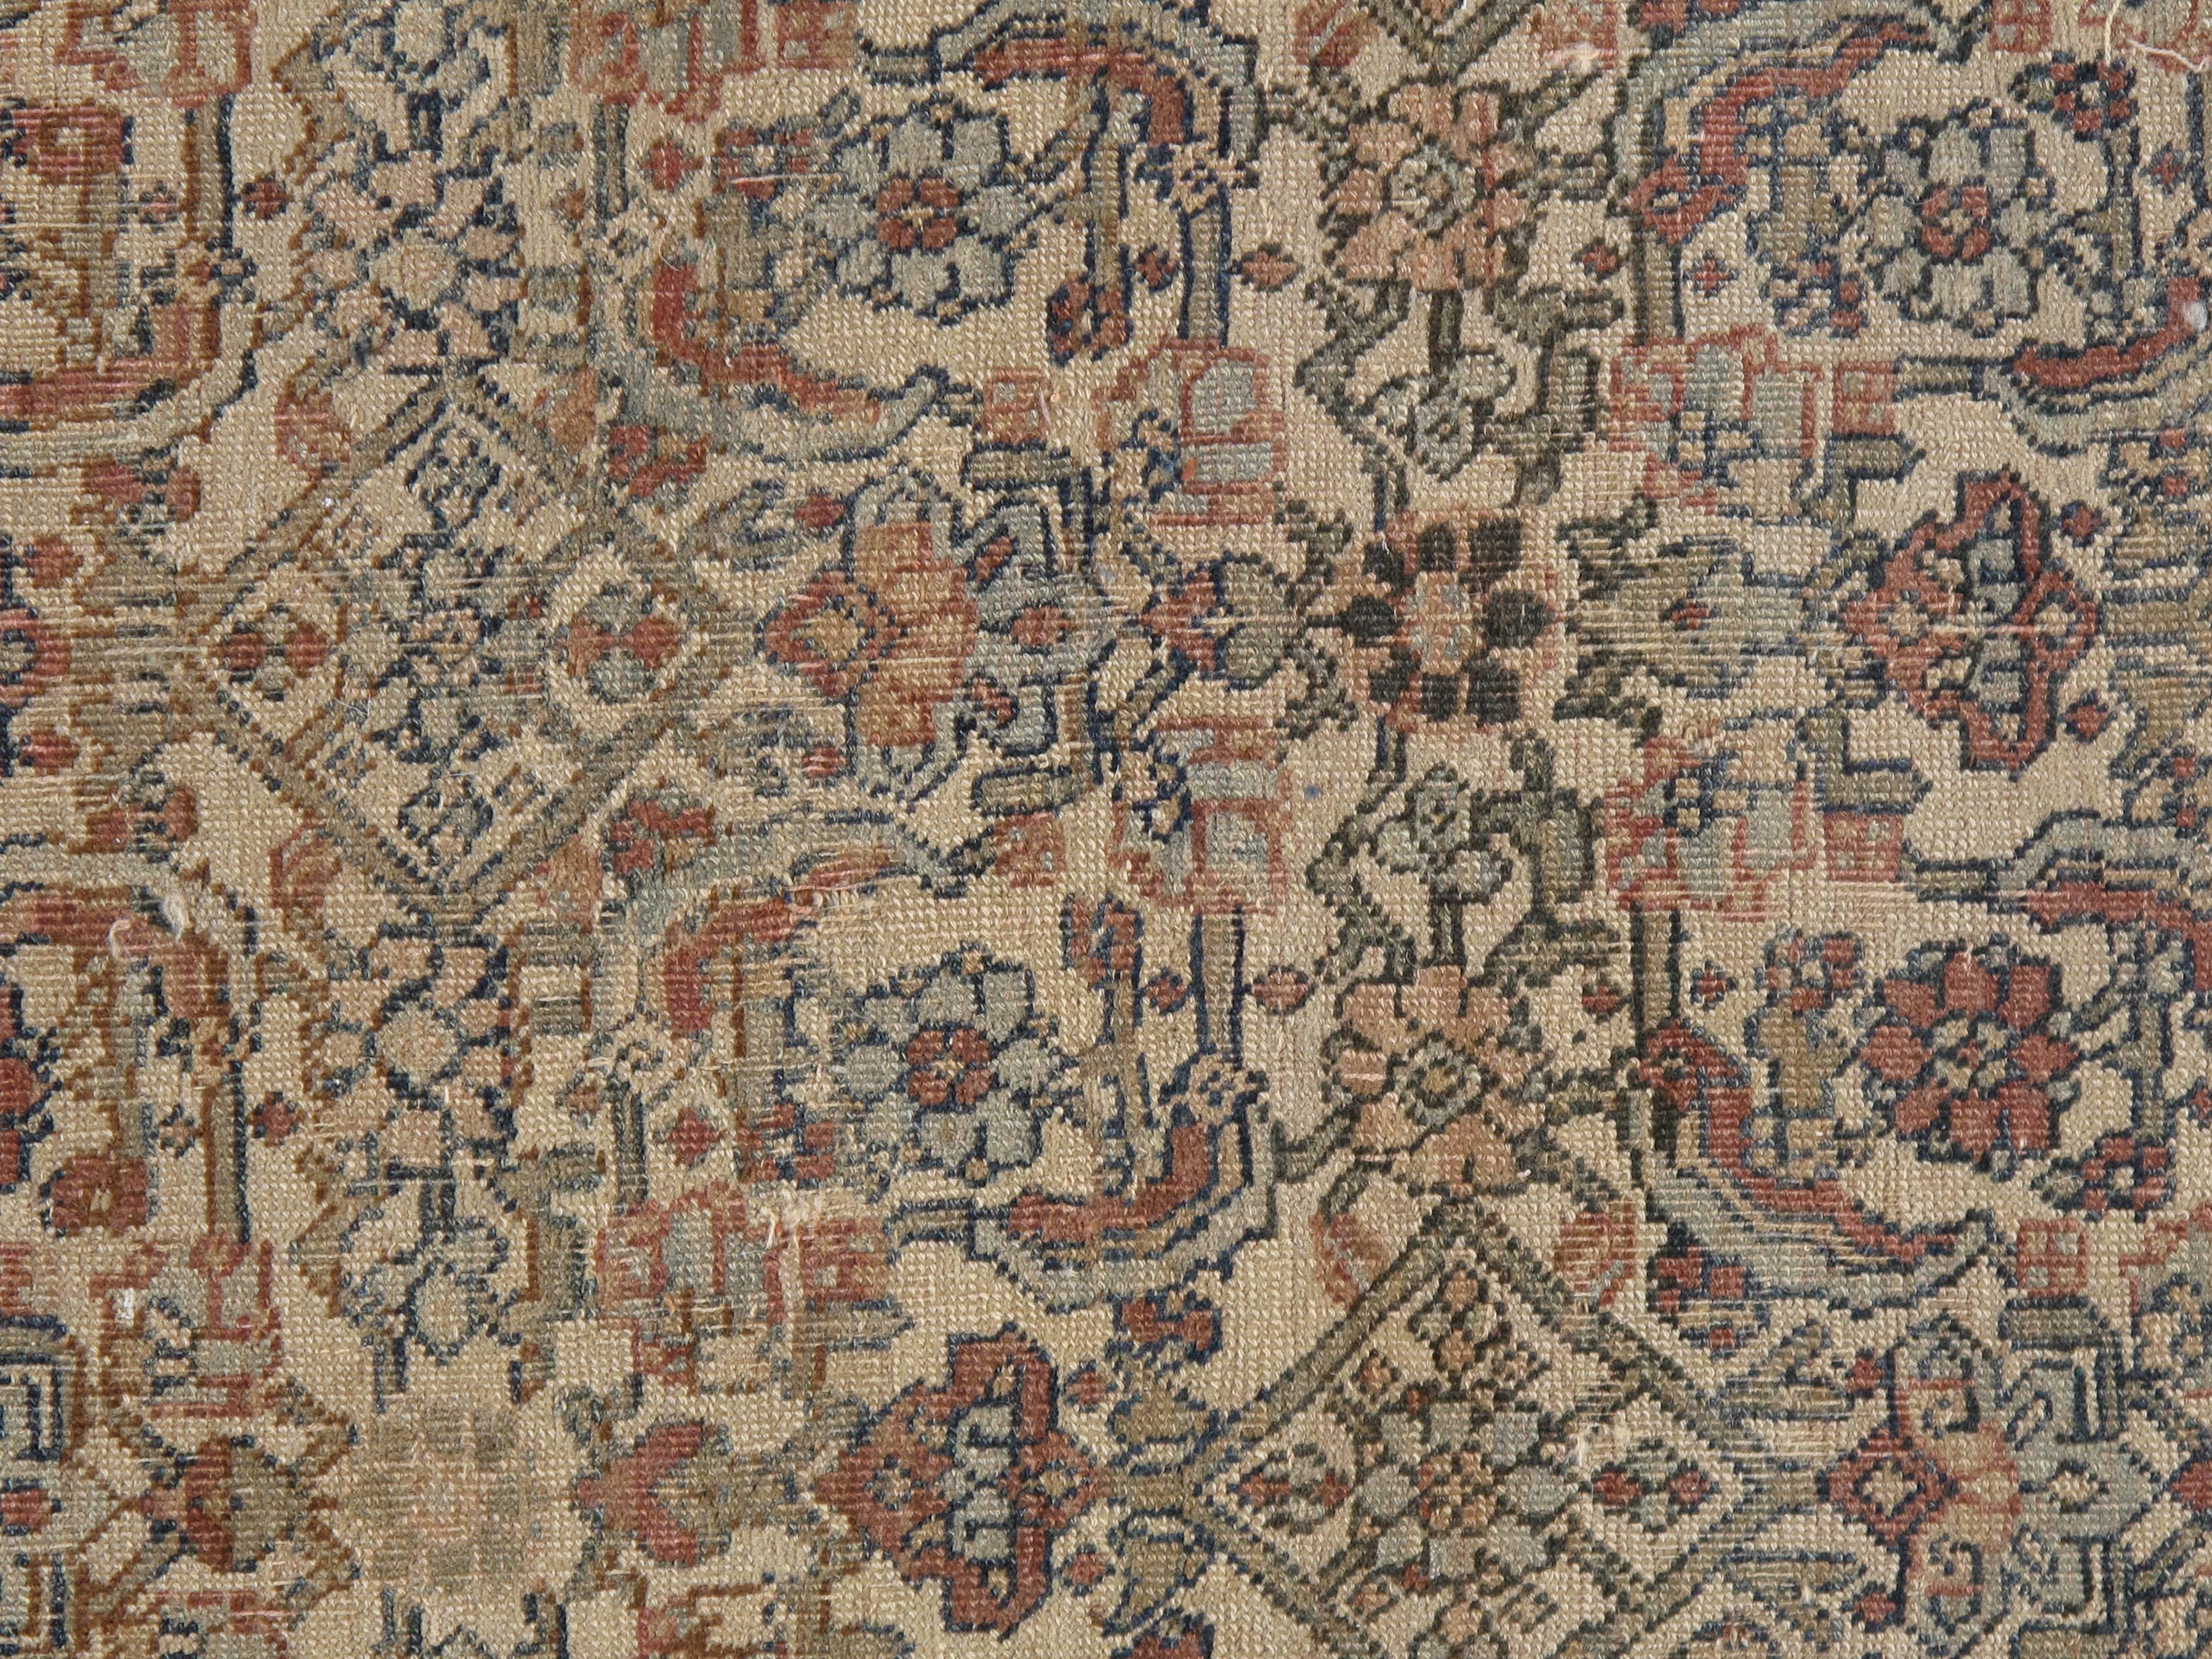 Antique Bijar Carpet Oriental Rug, Handmade, Ivory and Light Blue, Terracotta (Persisch)